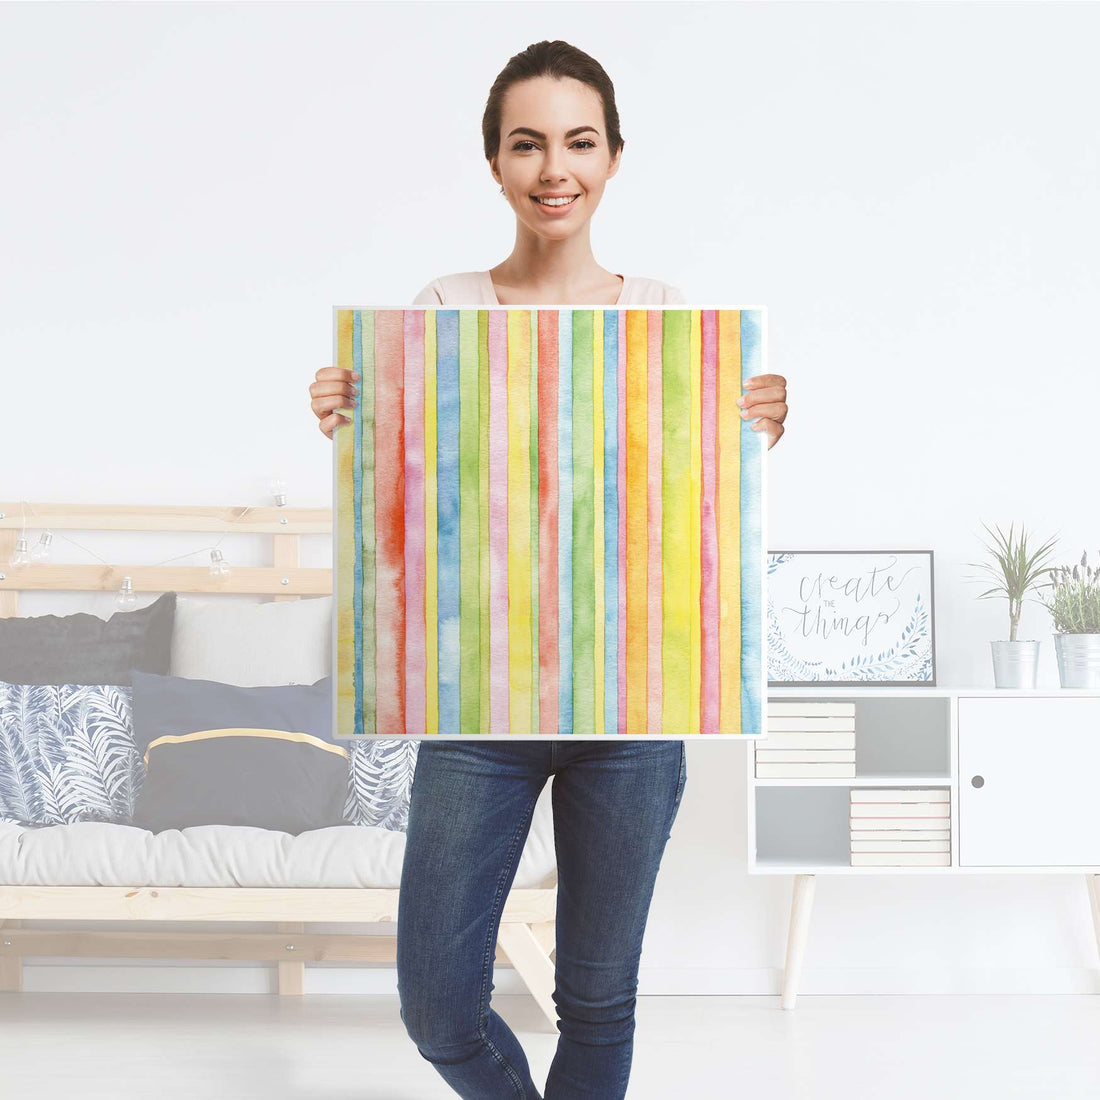 Klebefolie für Möbel Watercolor Stripes - IKEA Hemnes Couchtisch 90x90 cm - Folie